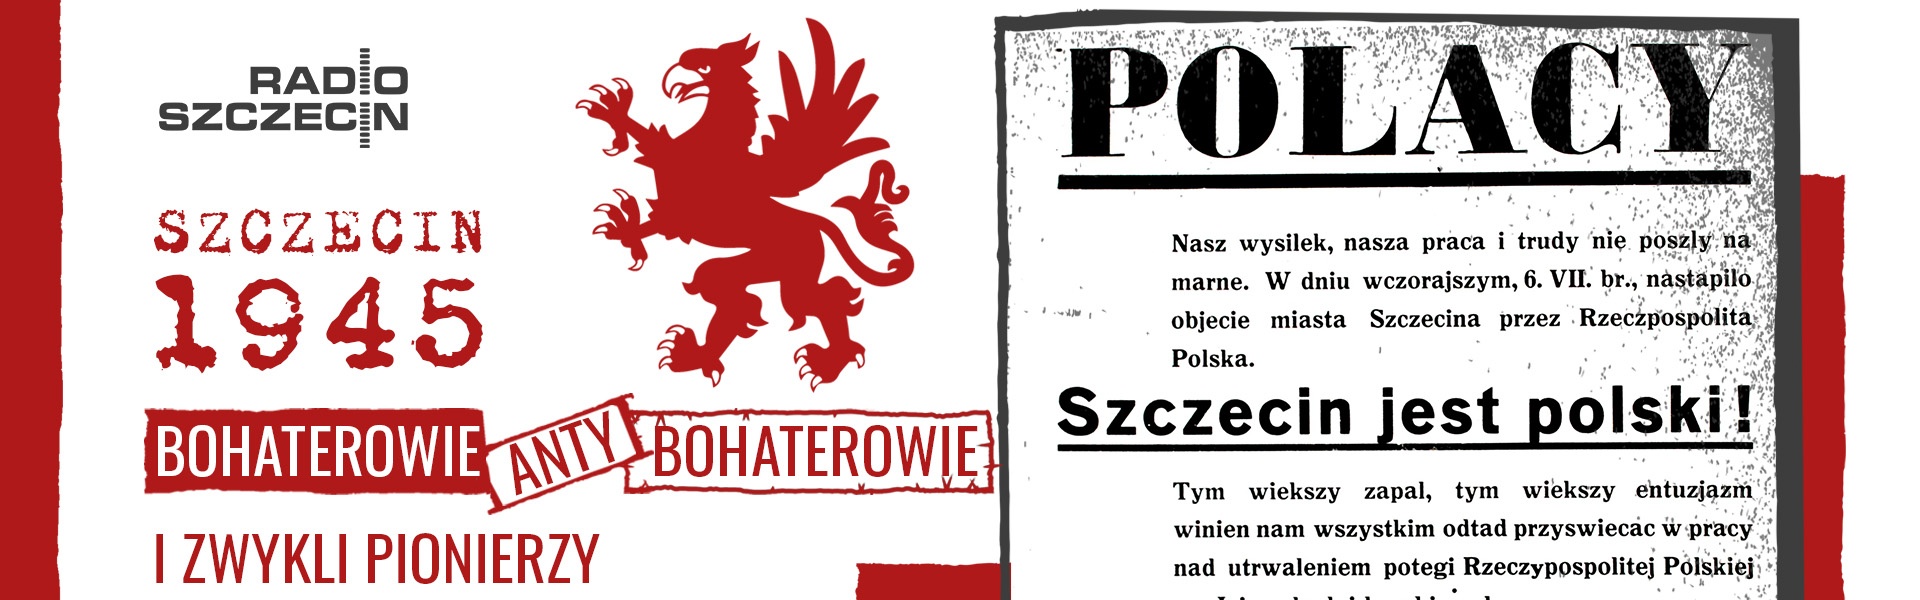 Szczecin 1945 - bohaterowie, antybohaterowie i zwykli pionierzy